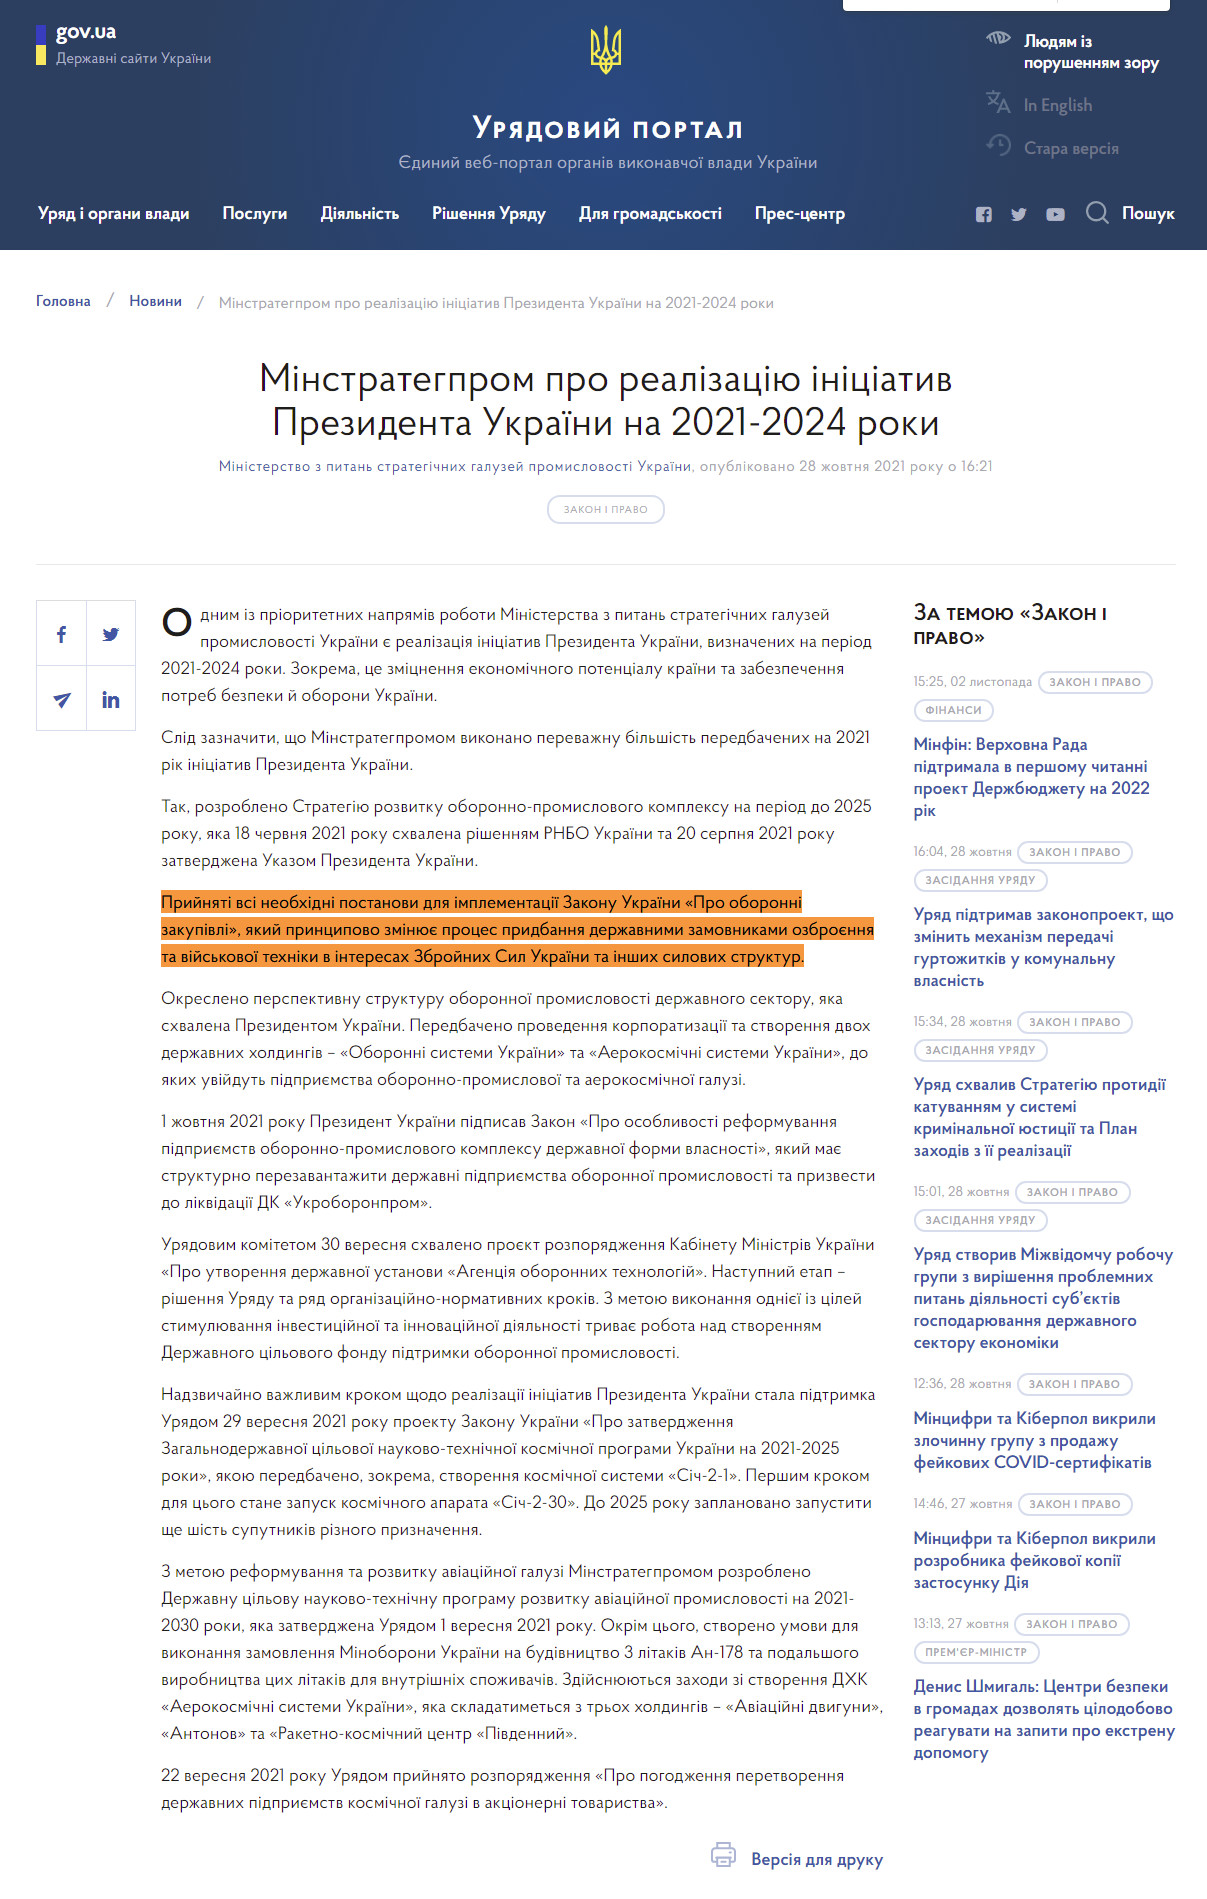 https://www.kmu.gov.ua/news/minstrategprom-pro-realizaciyu-iniciativ-prezidenta-ukrayini-na-2021-2024-roki